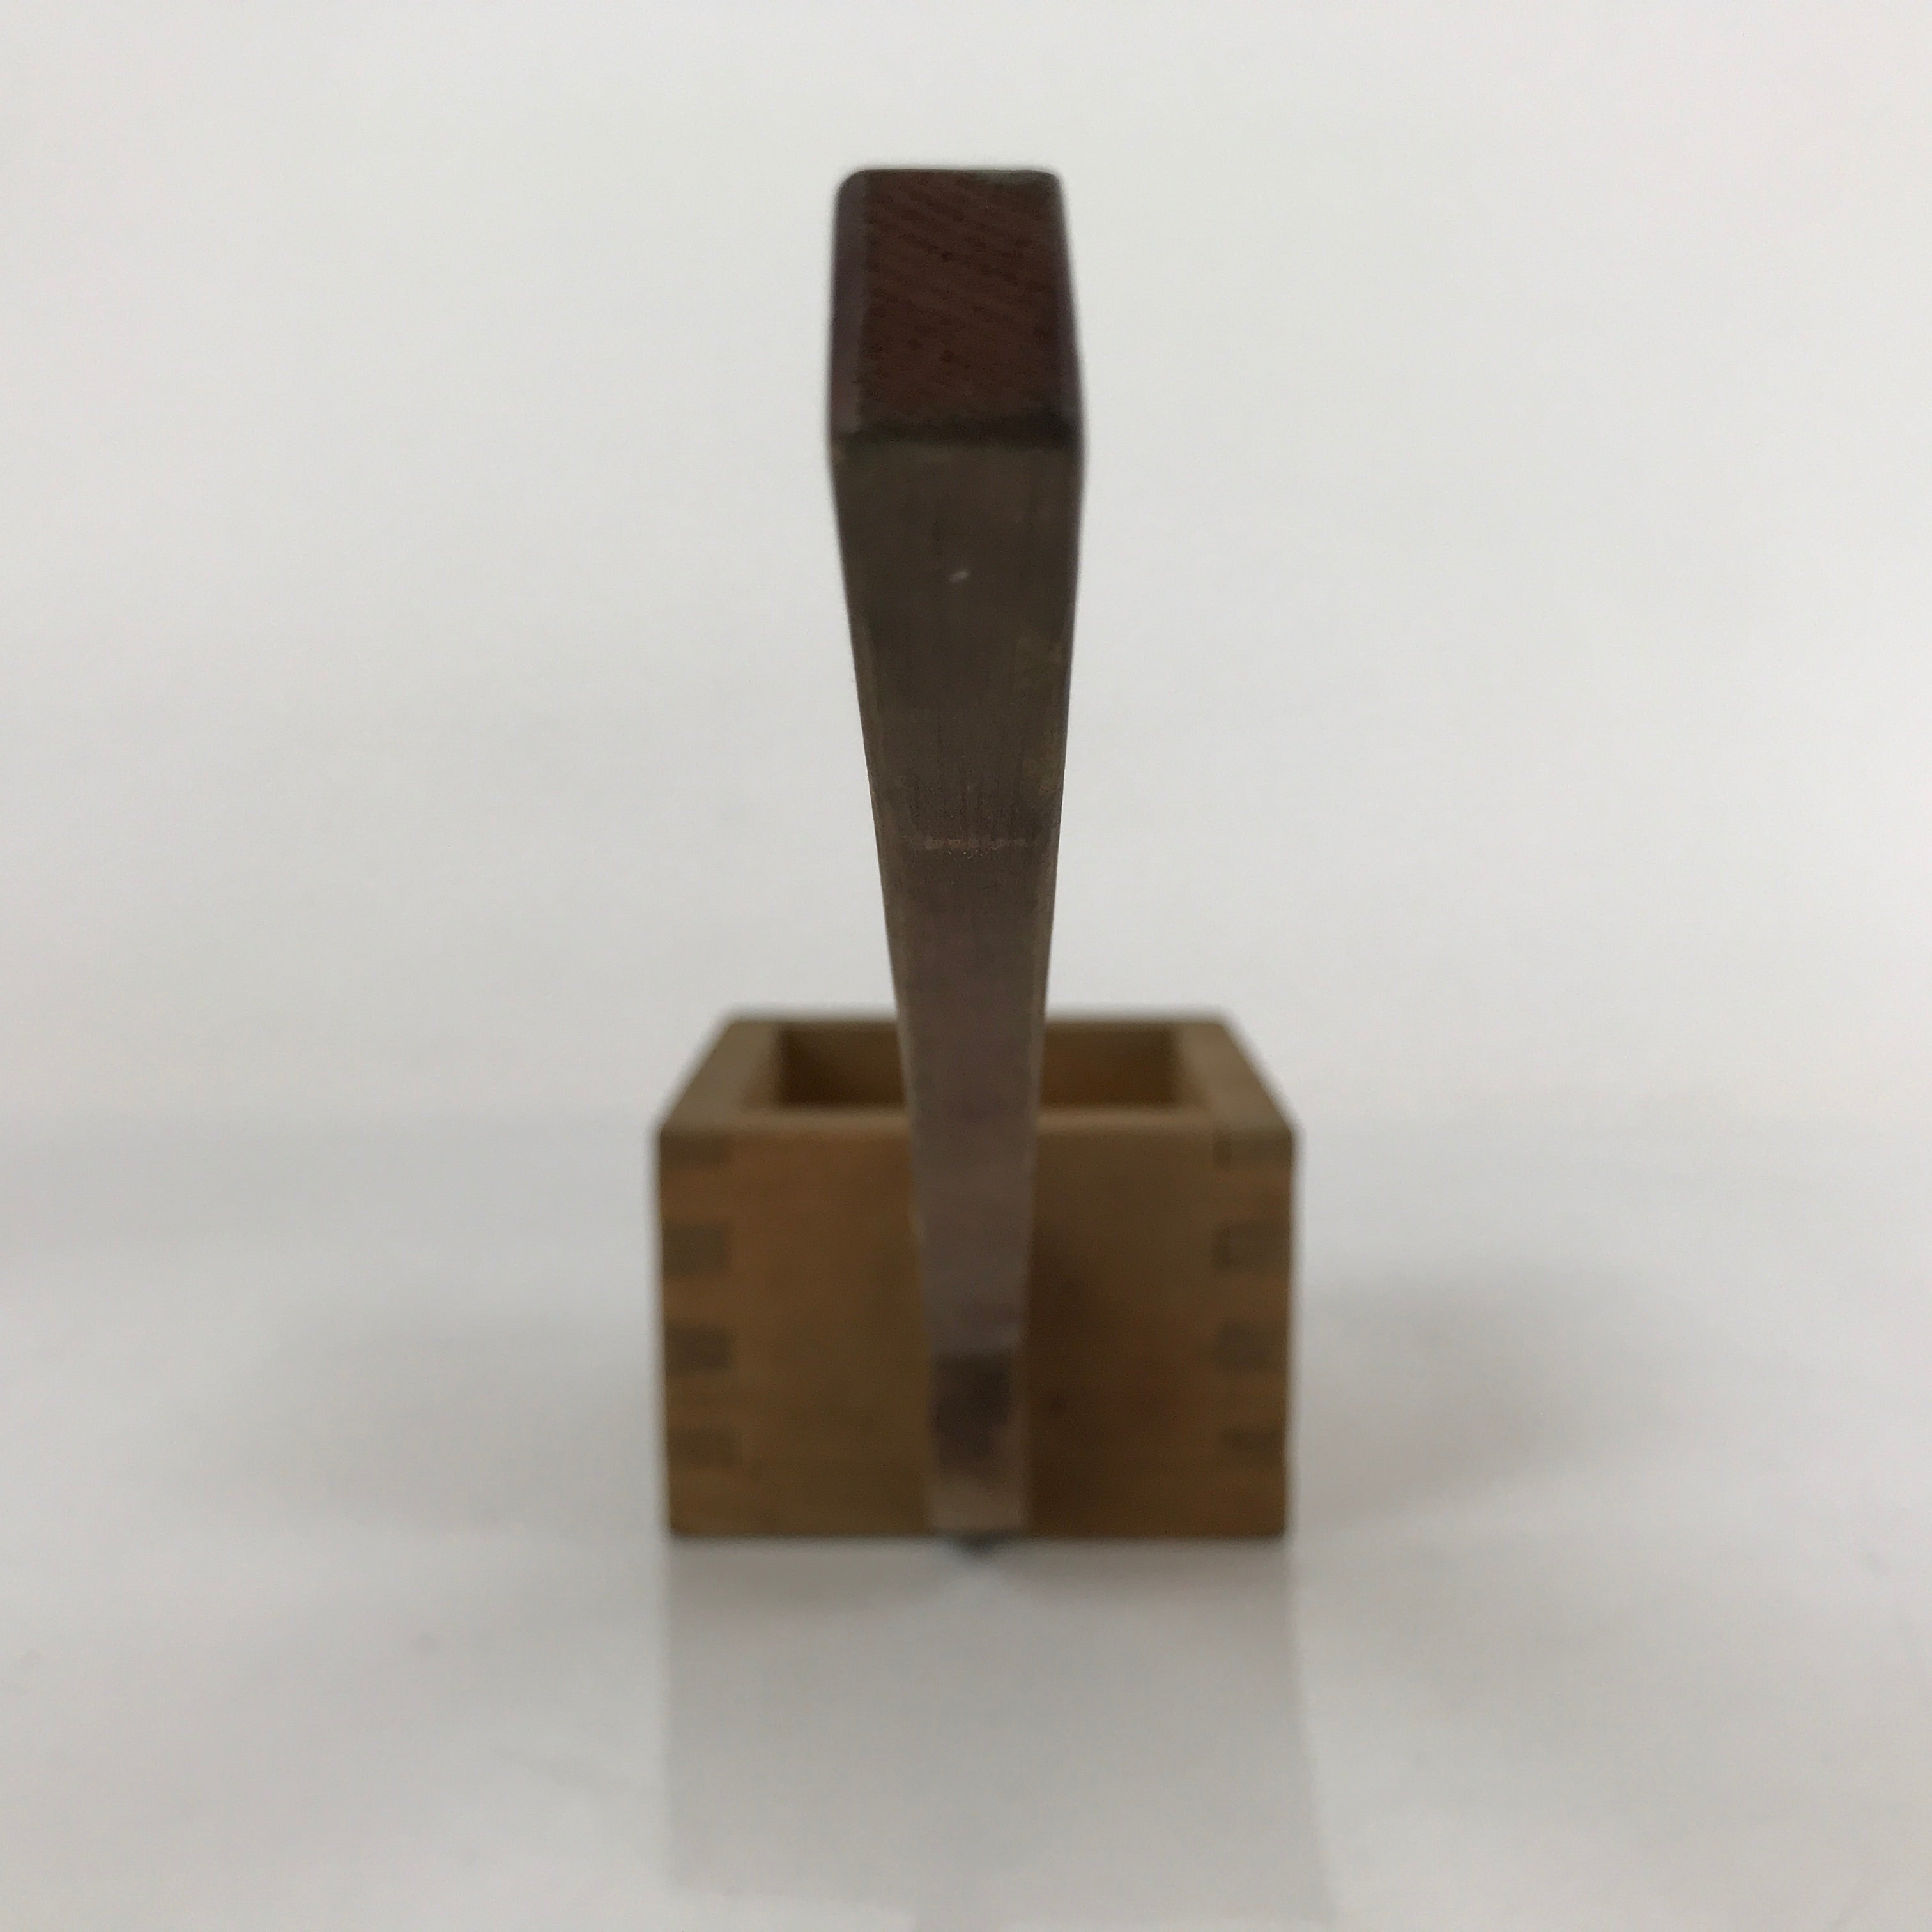 Japanese Handmade Wood Masu Liquid Measuring Tool Vtg 0.2L Light Brown JK689